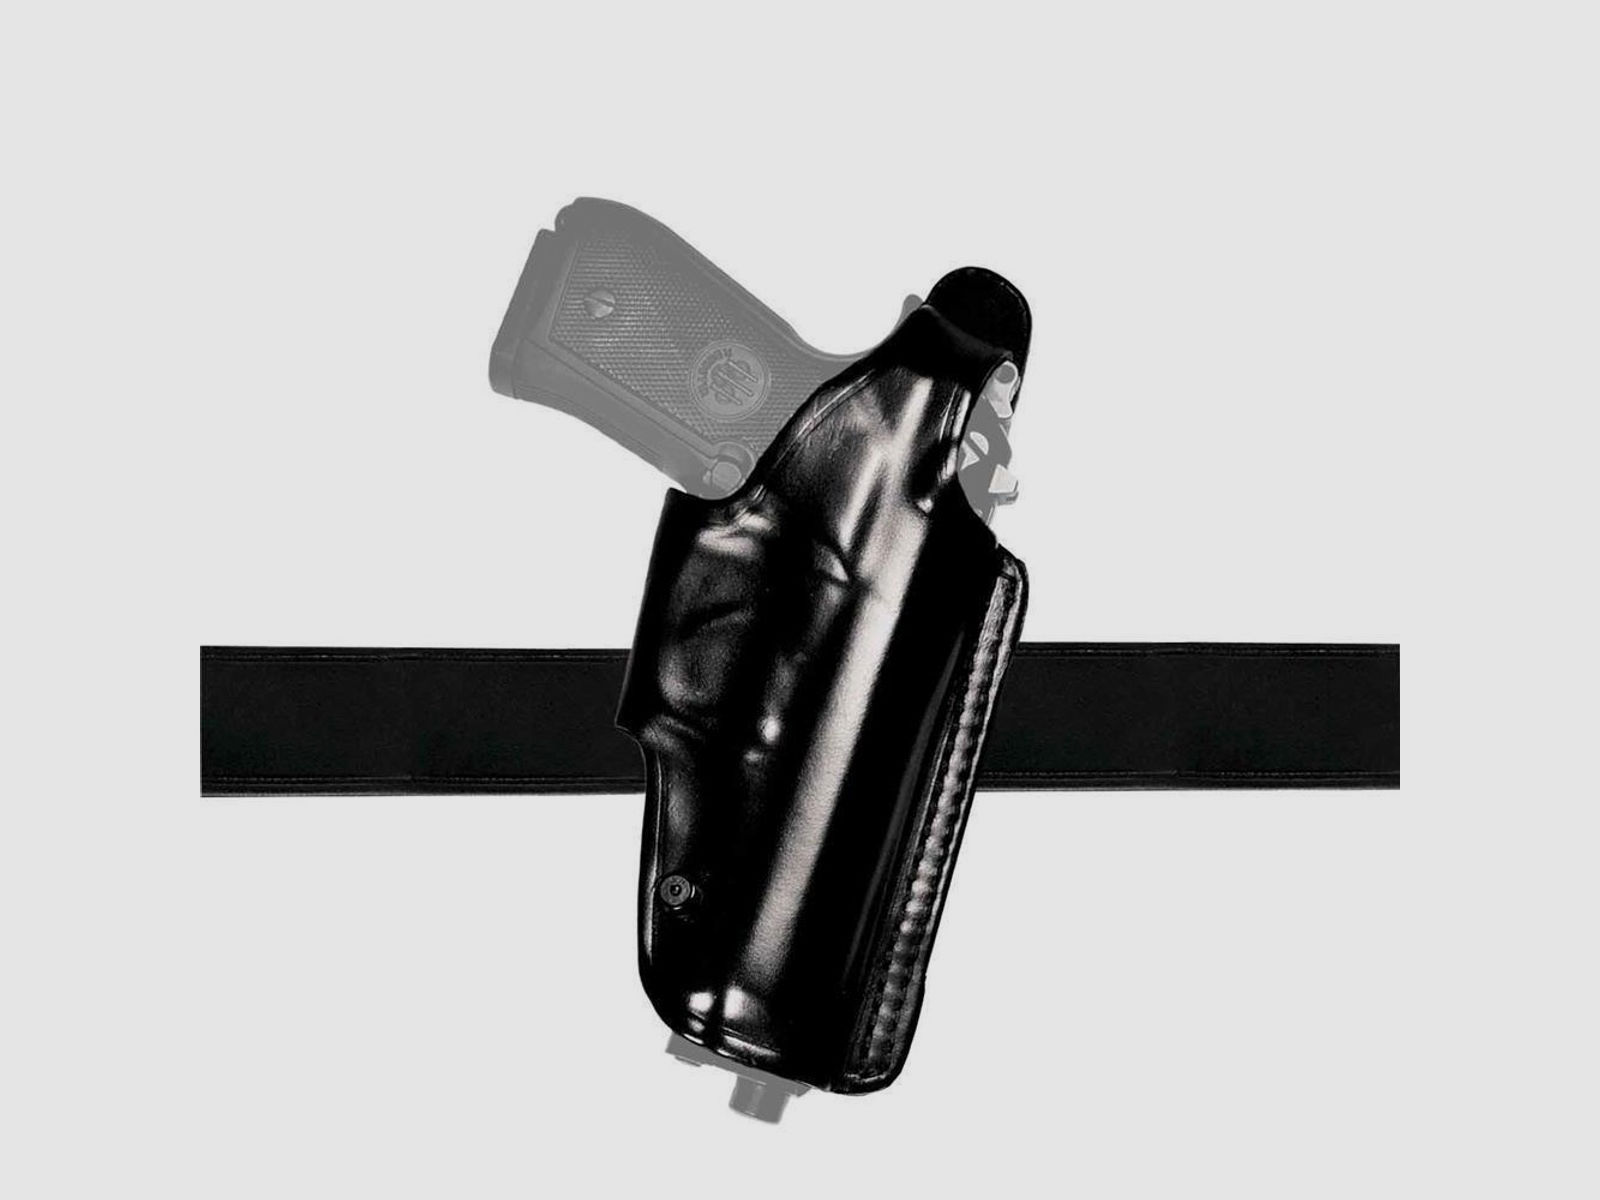 Mehrzweck-Schulterholster/Gürtelholster "Miami 2" Glock 26/27, Walther PPS Schwarz Linkshänder